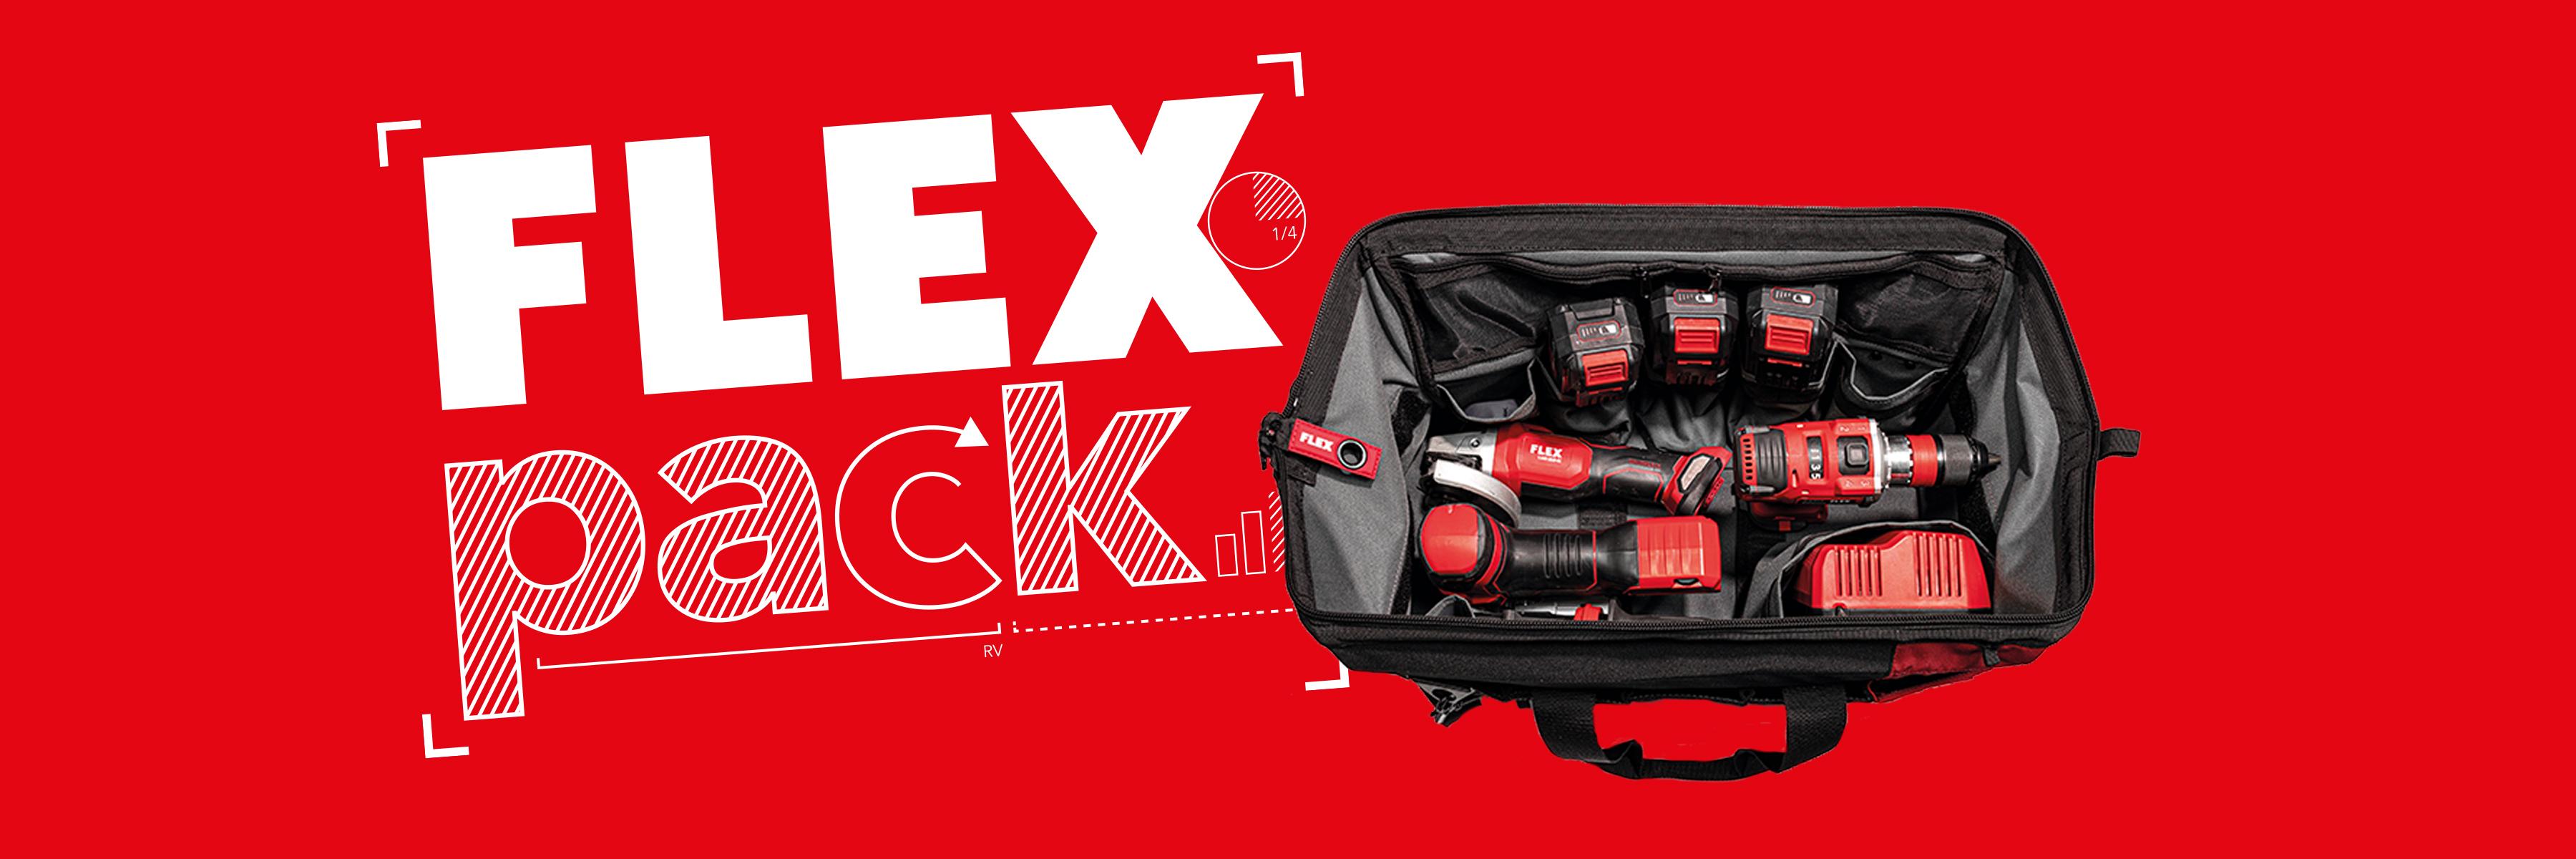 Promotion FLEXPACK : 3 machines sans fil FLEX avec chargeur et batteries dans un sac